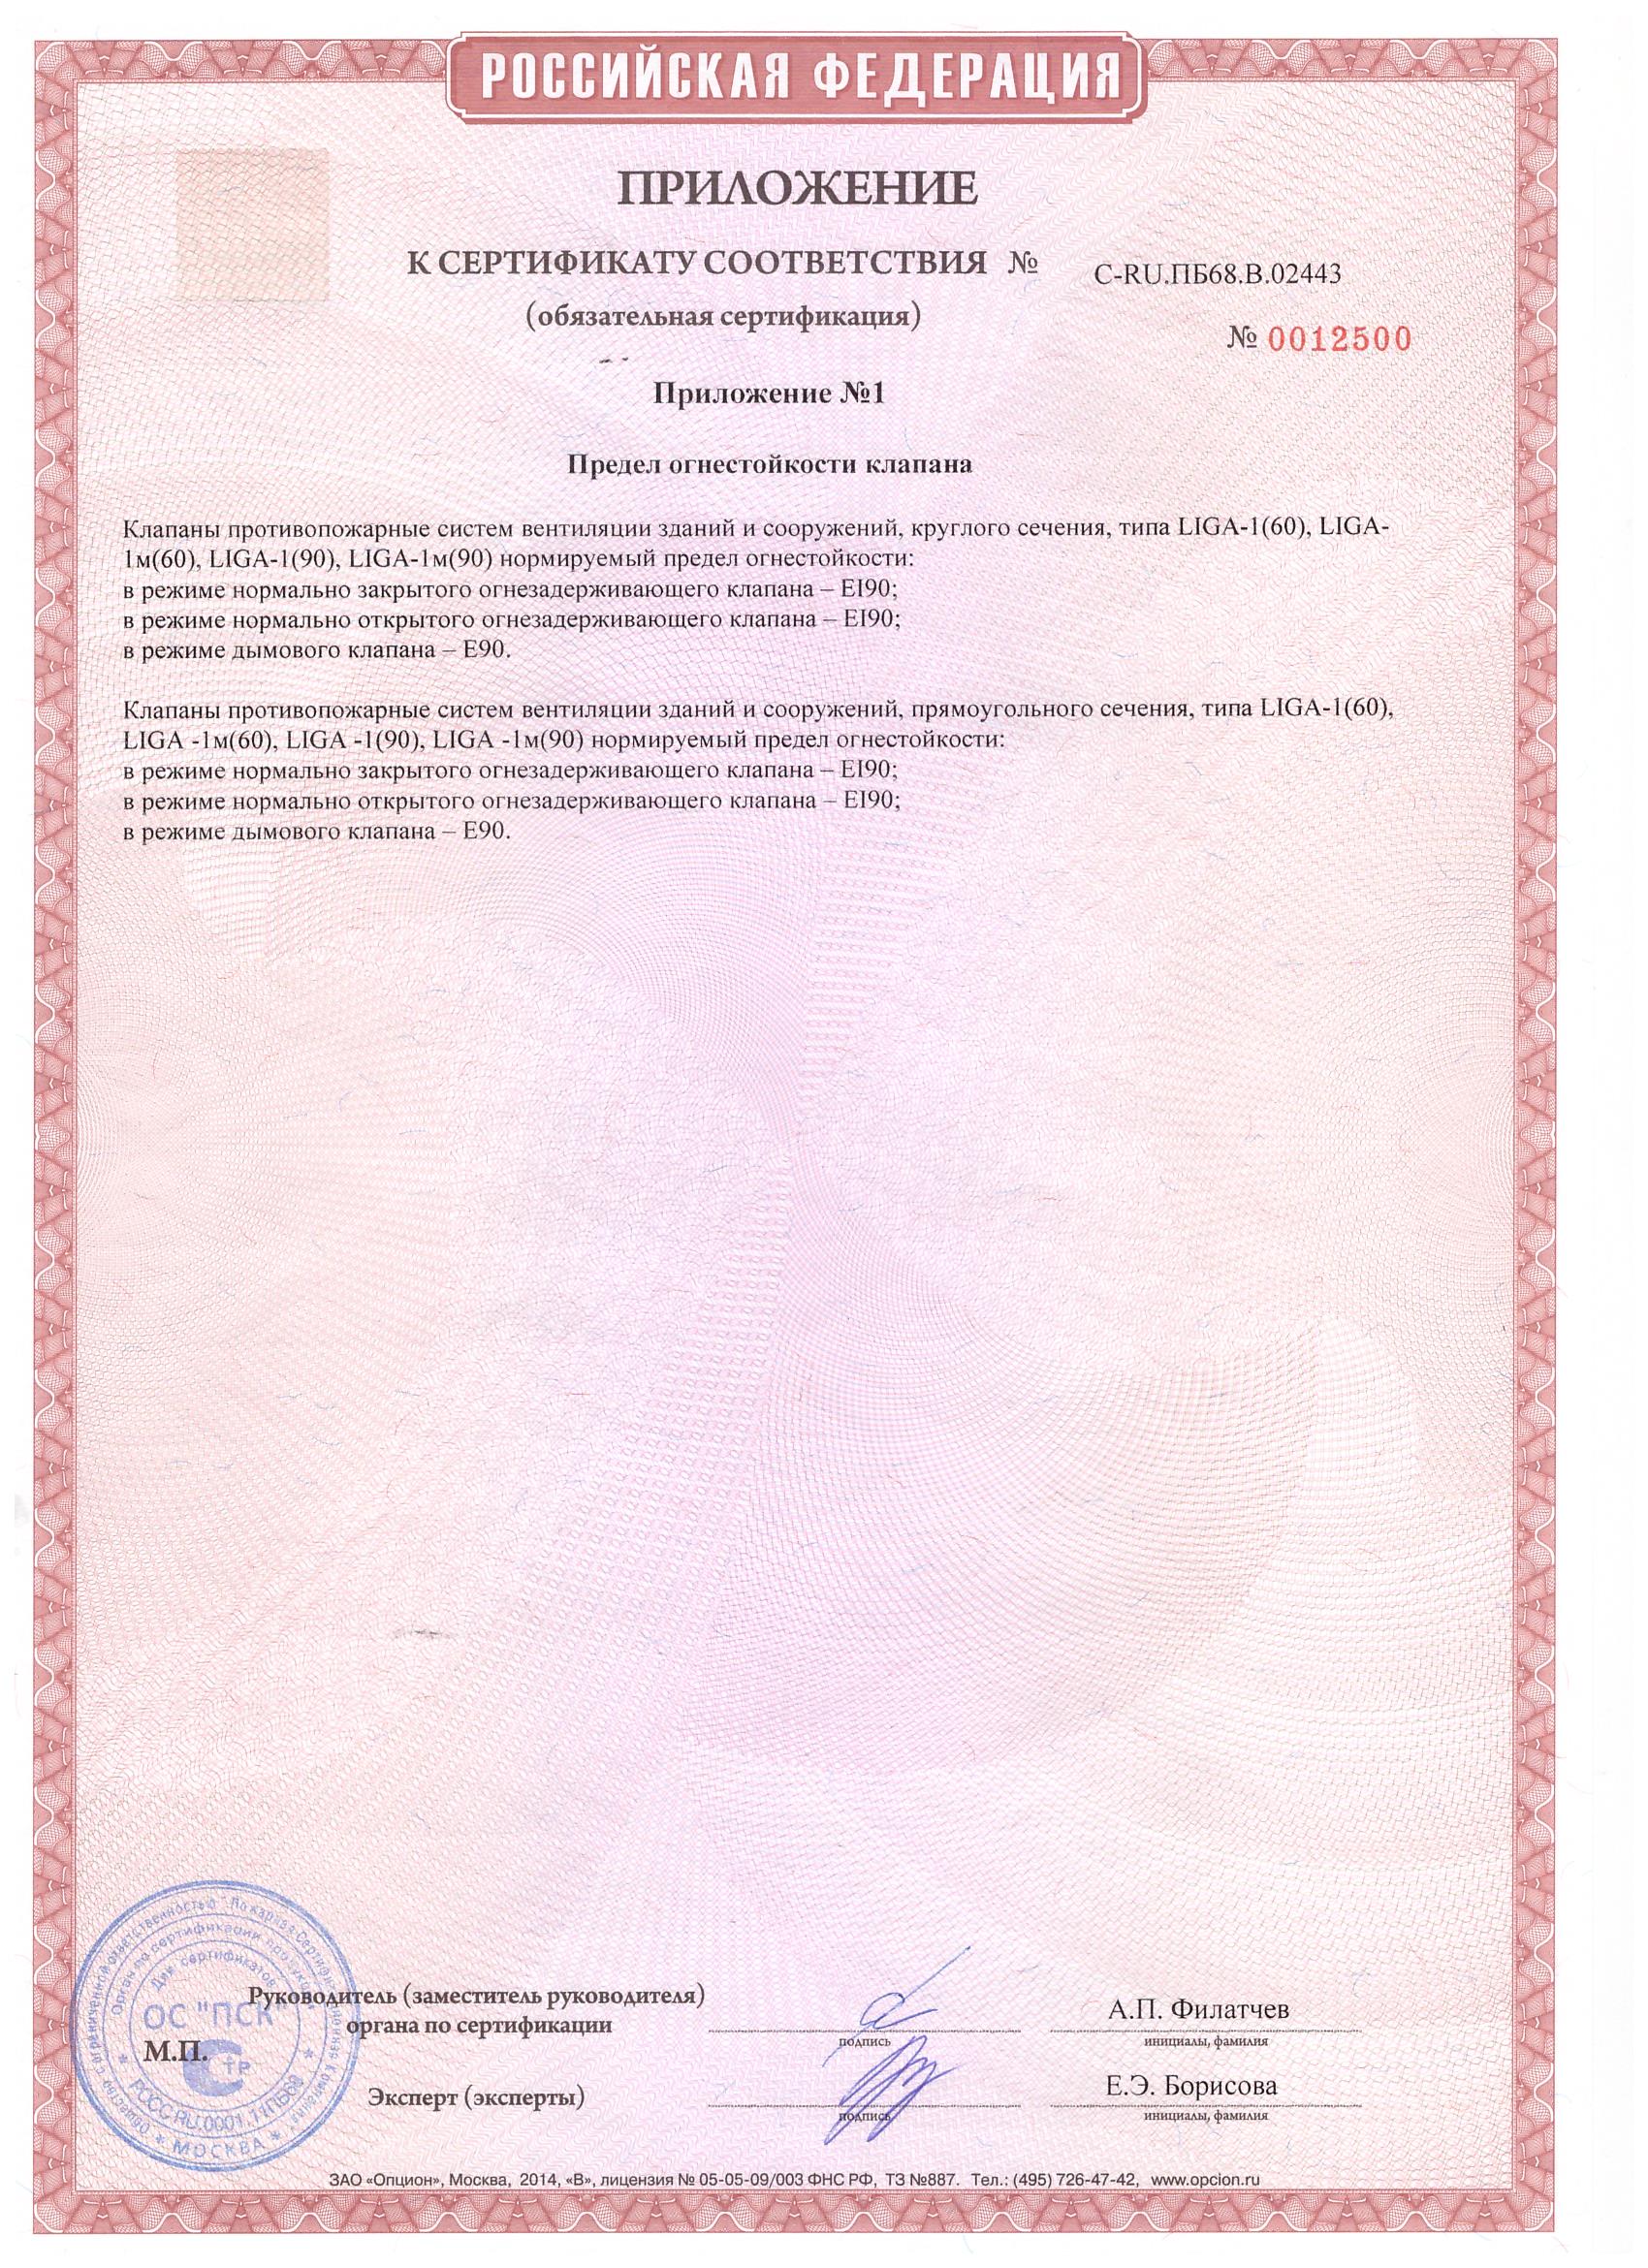 Гост 53325 2012 статус. Ип101-17р-a1r вектор. Пожарный сертификат ИП 101-1а-а1. Приложение к сертификату соответствия пожарной безопасности. Сертификат соответствия c-ru. Пб25.в..